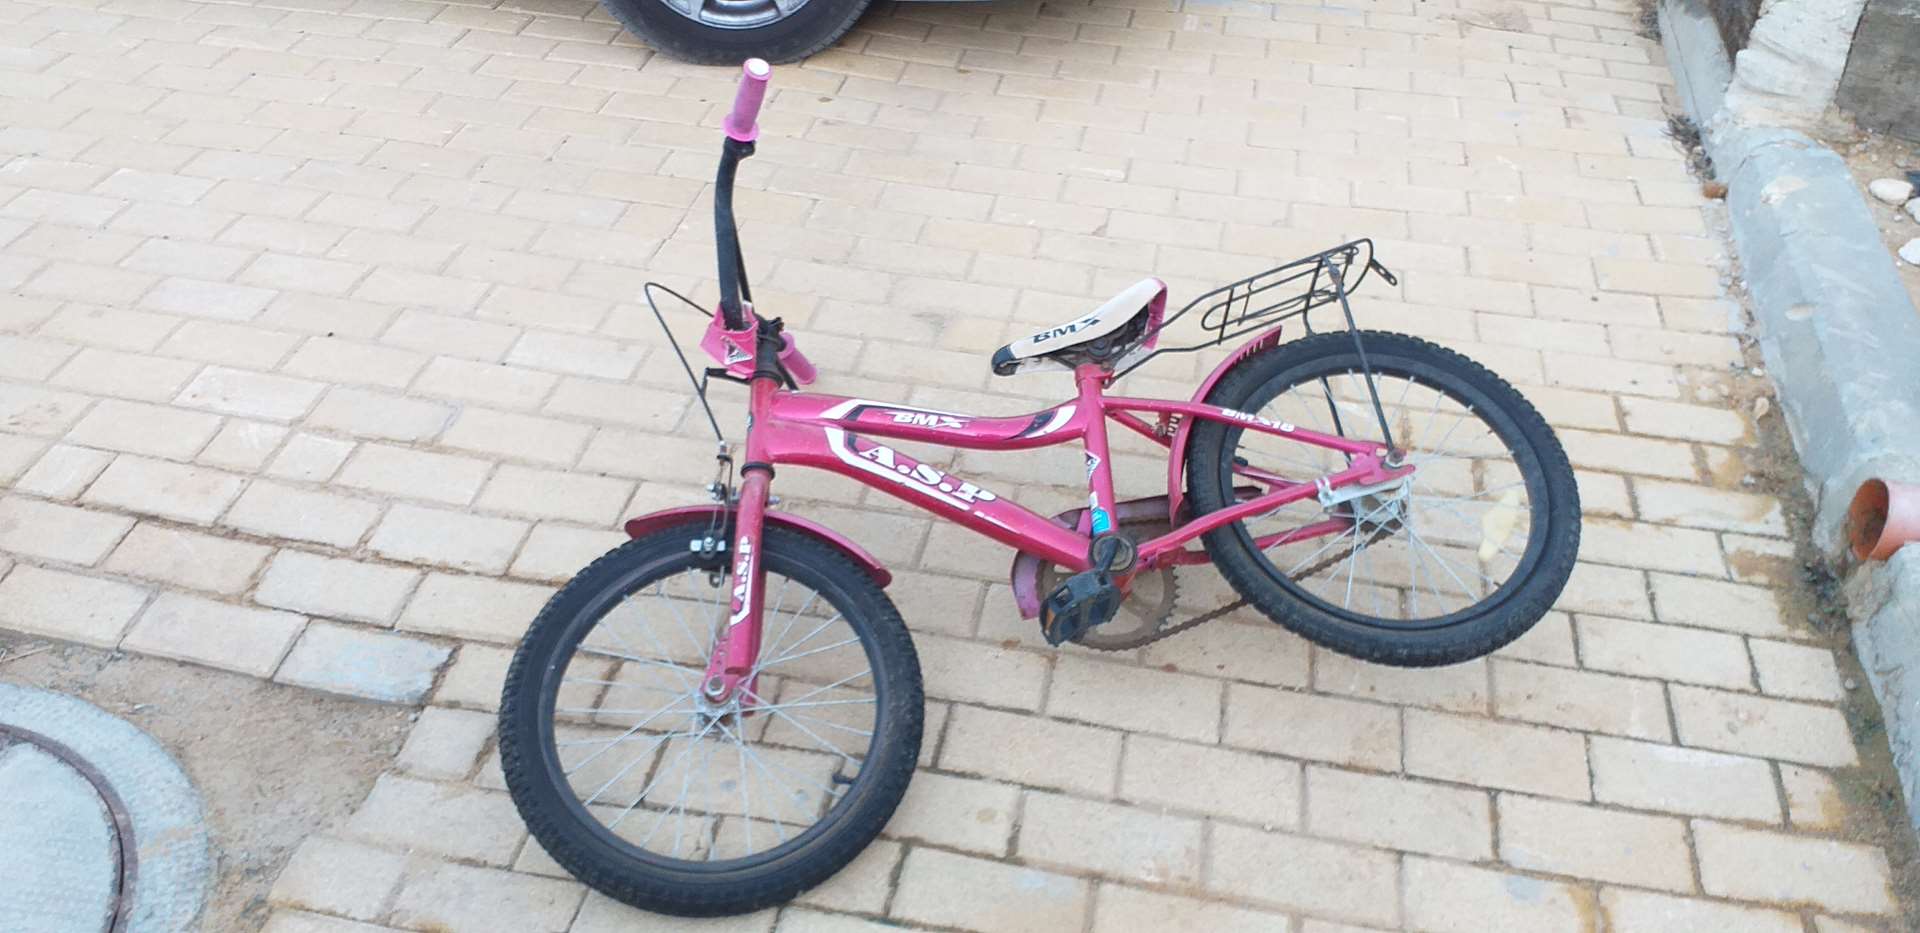 תמונה 1 ,2 זוגות אופני ילדים למכירה ברוחמה אופניים  אופני ילדים